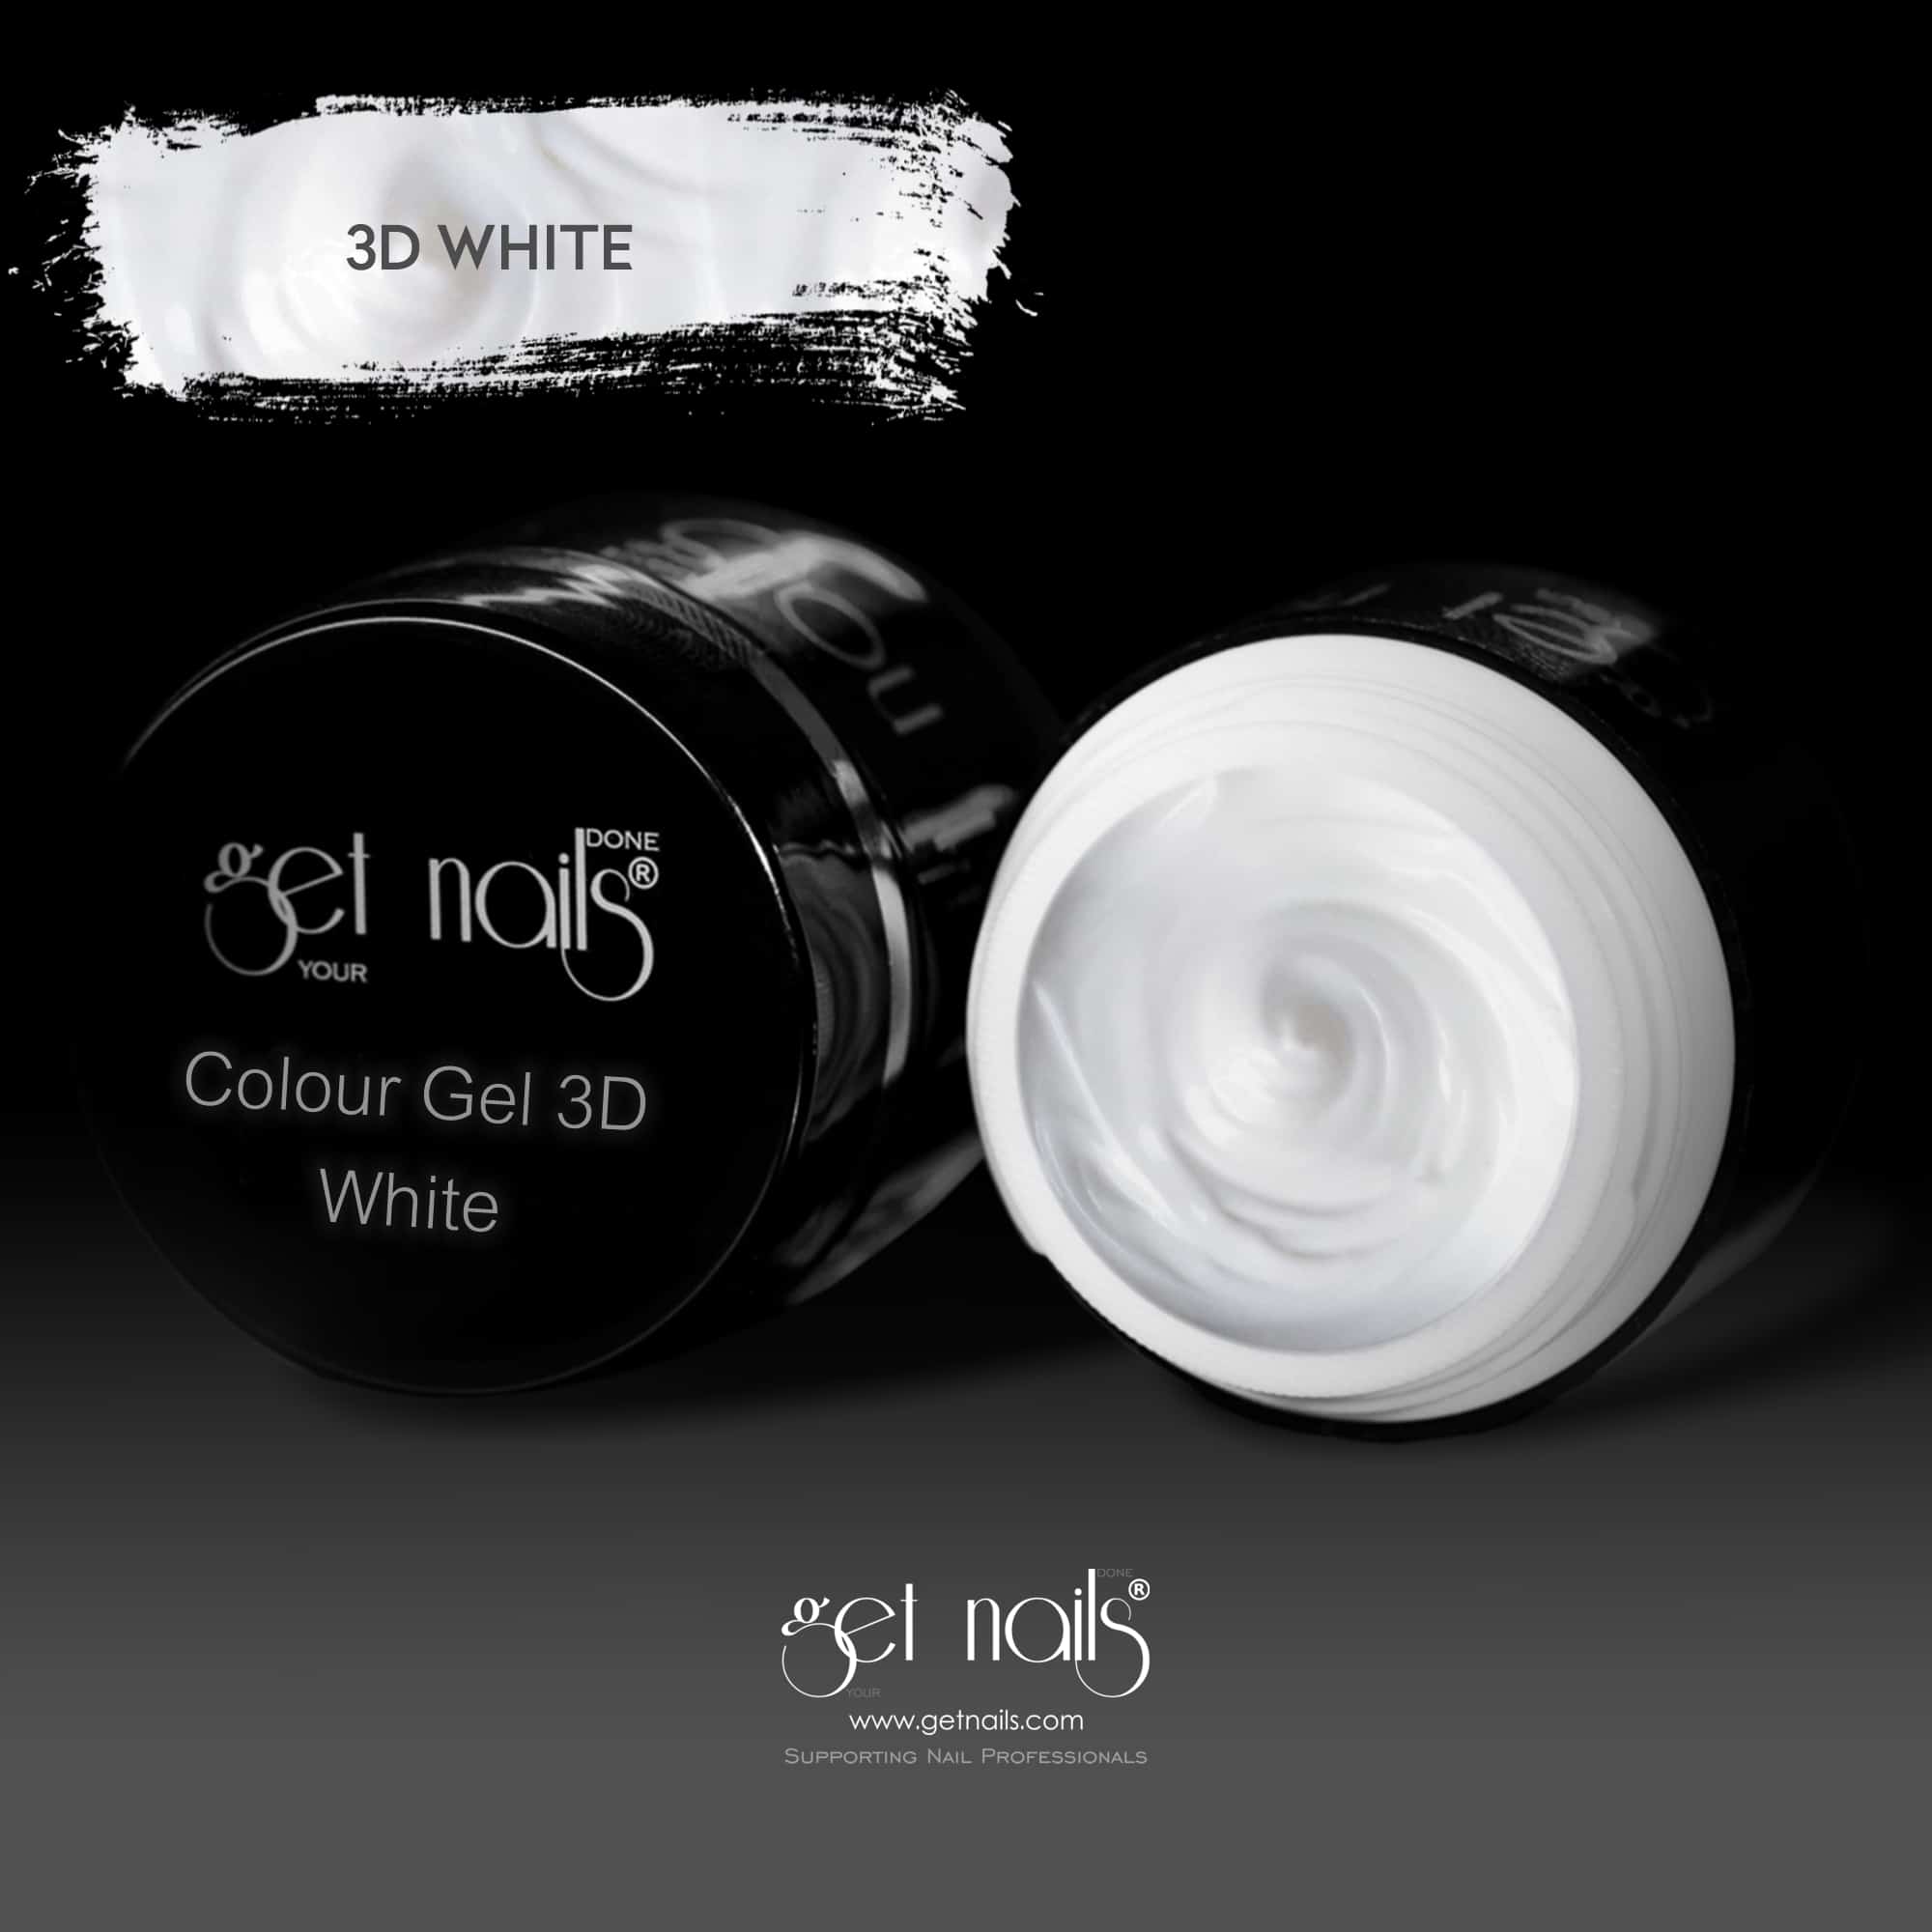 Get Nails Austria - Colour Gel 3D White 5g